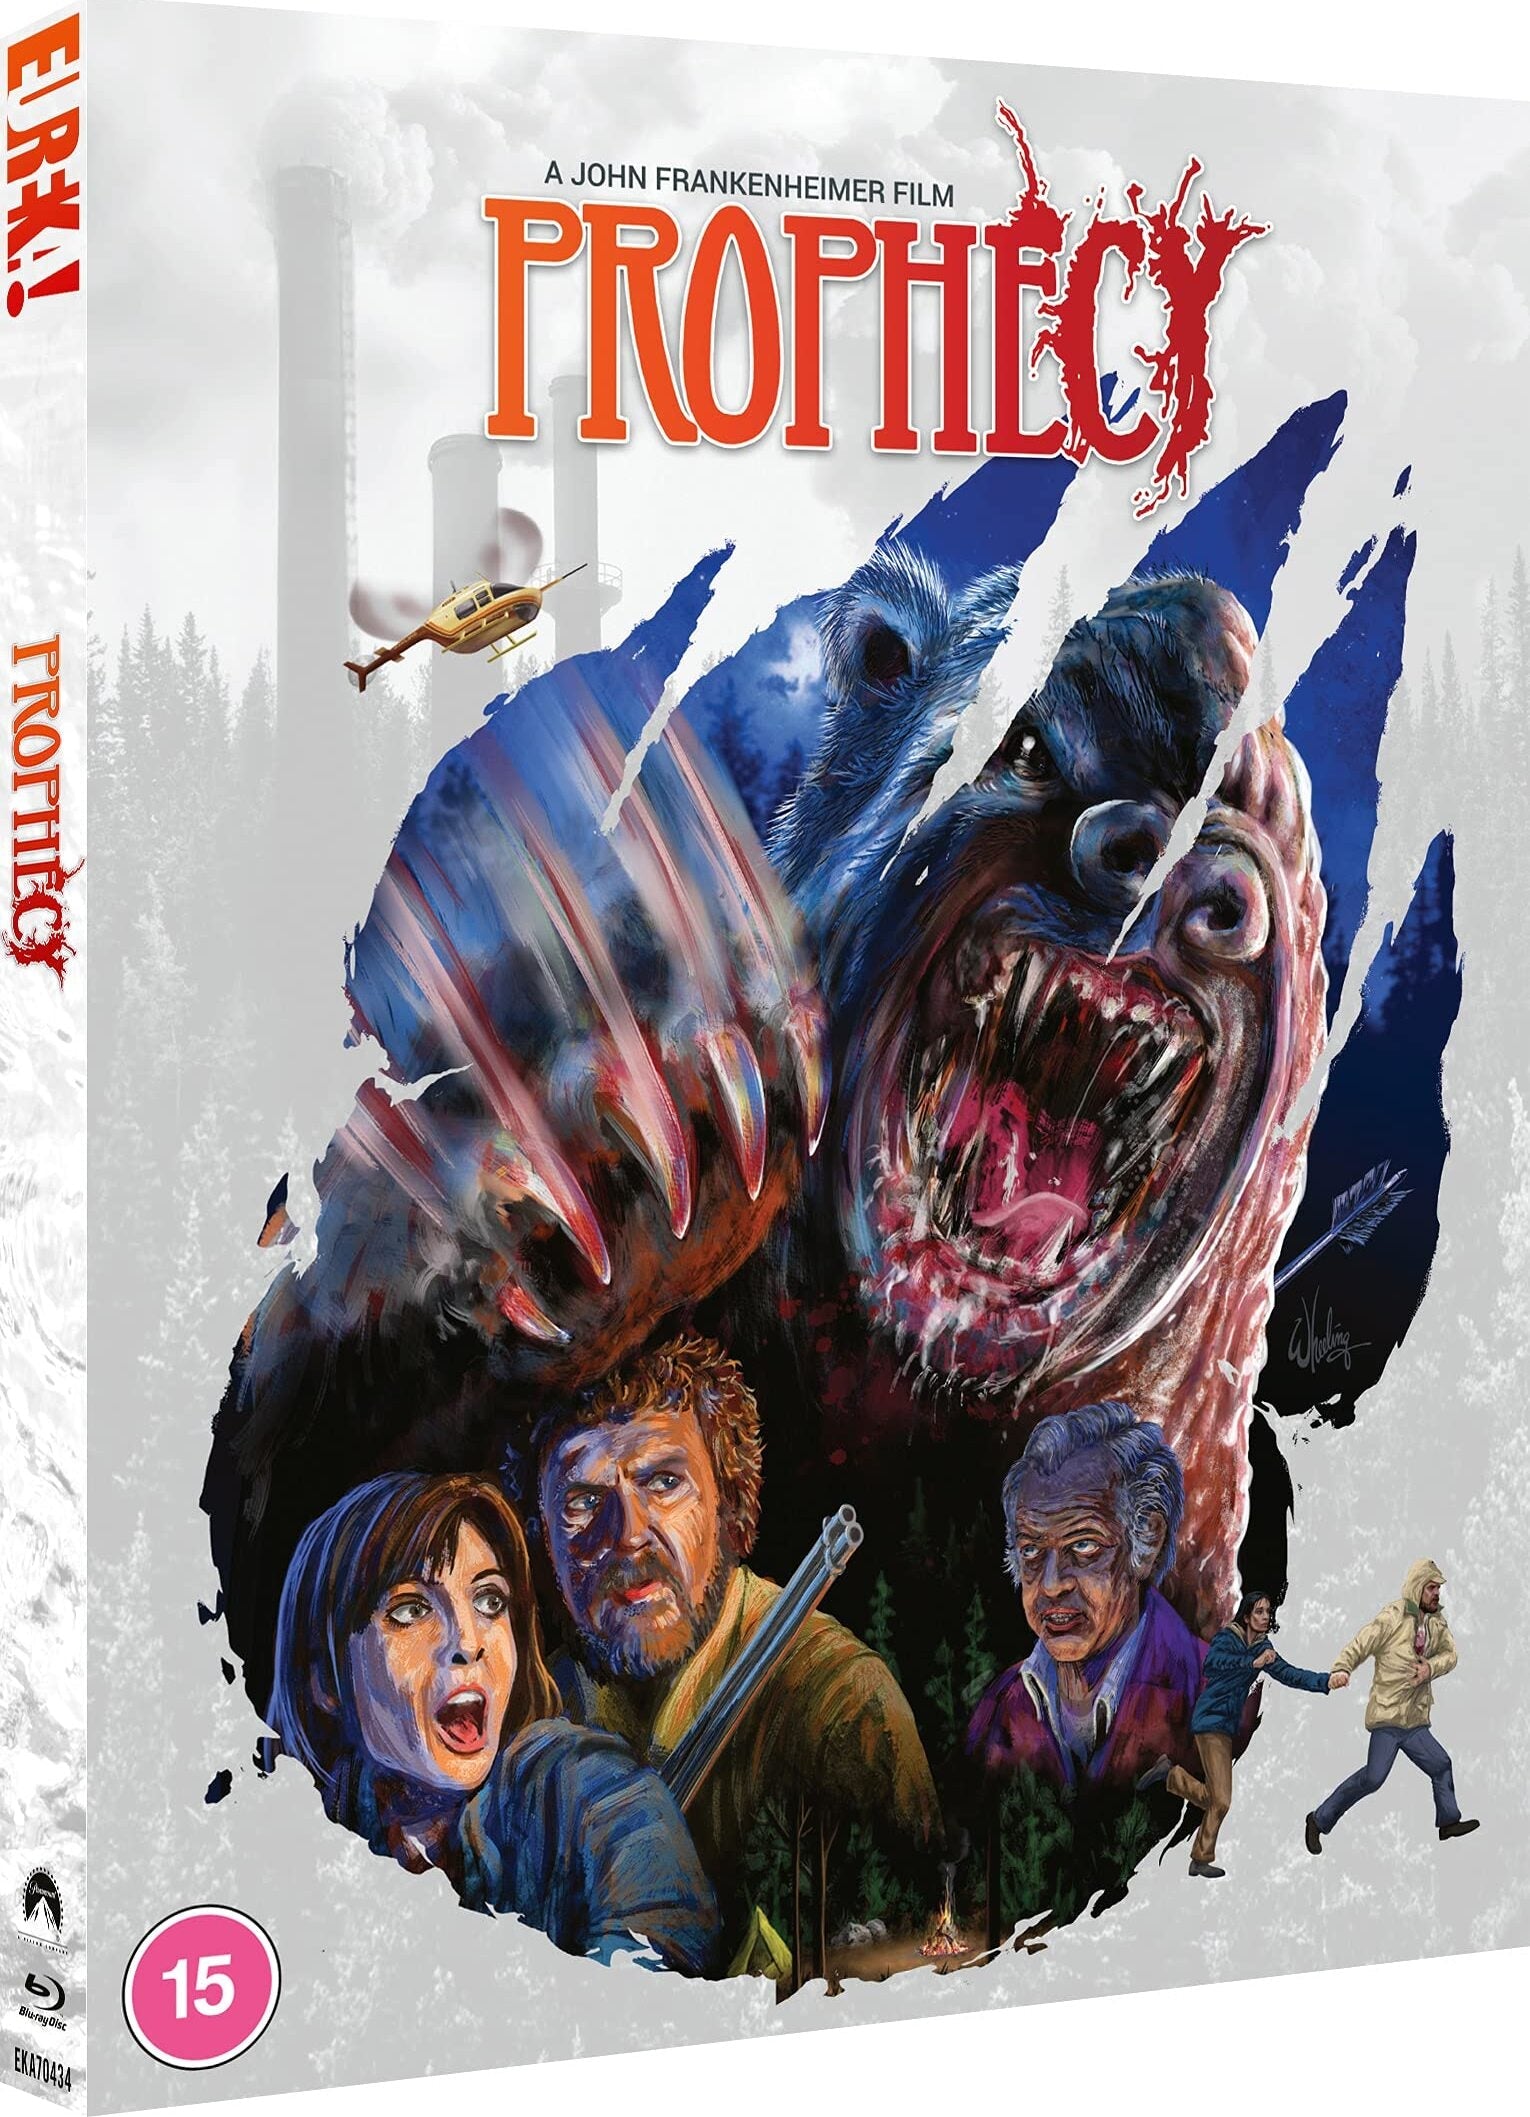 Prophecy (Limited Edition - Region B Import) Blu-Ray Blu-Ray